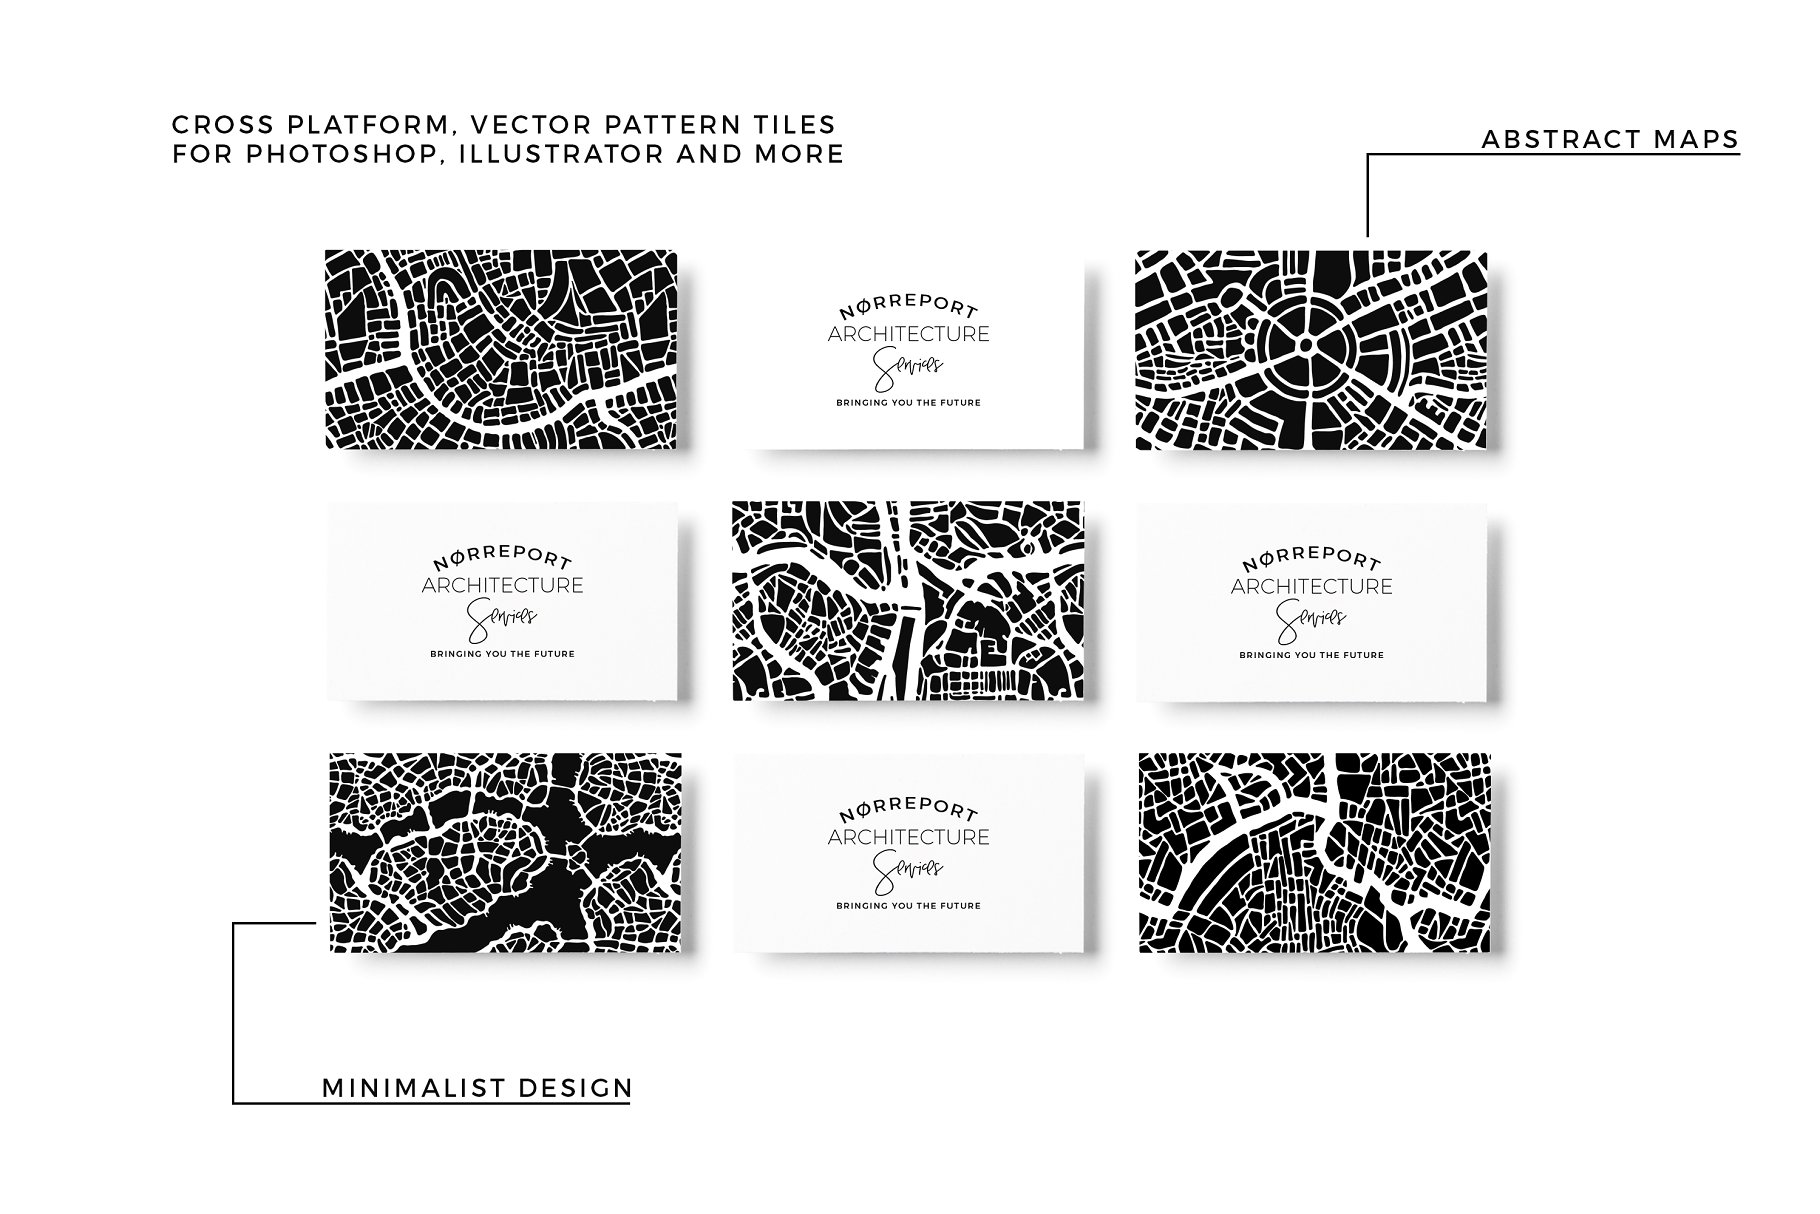 抽象城市地图纹理素材包 Abstract City Map Patterns插图(3)